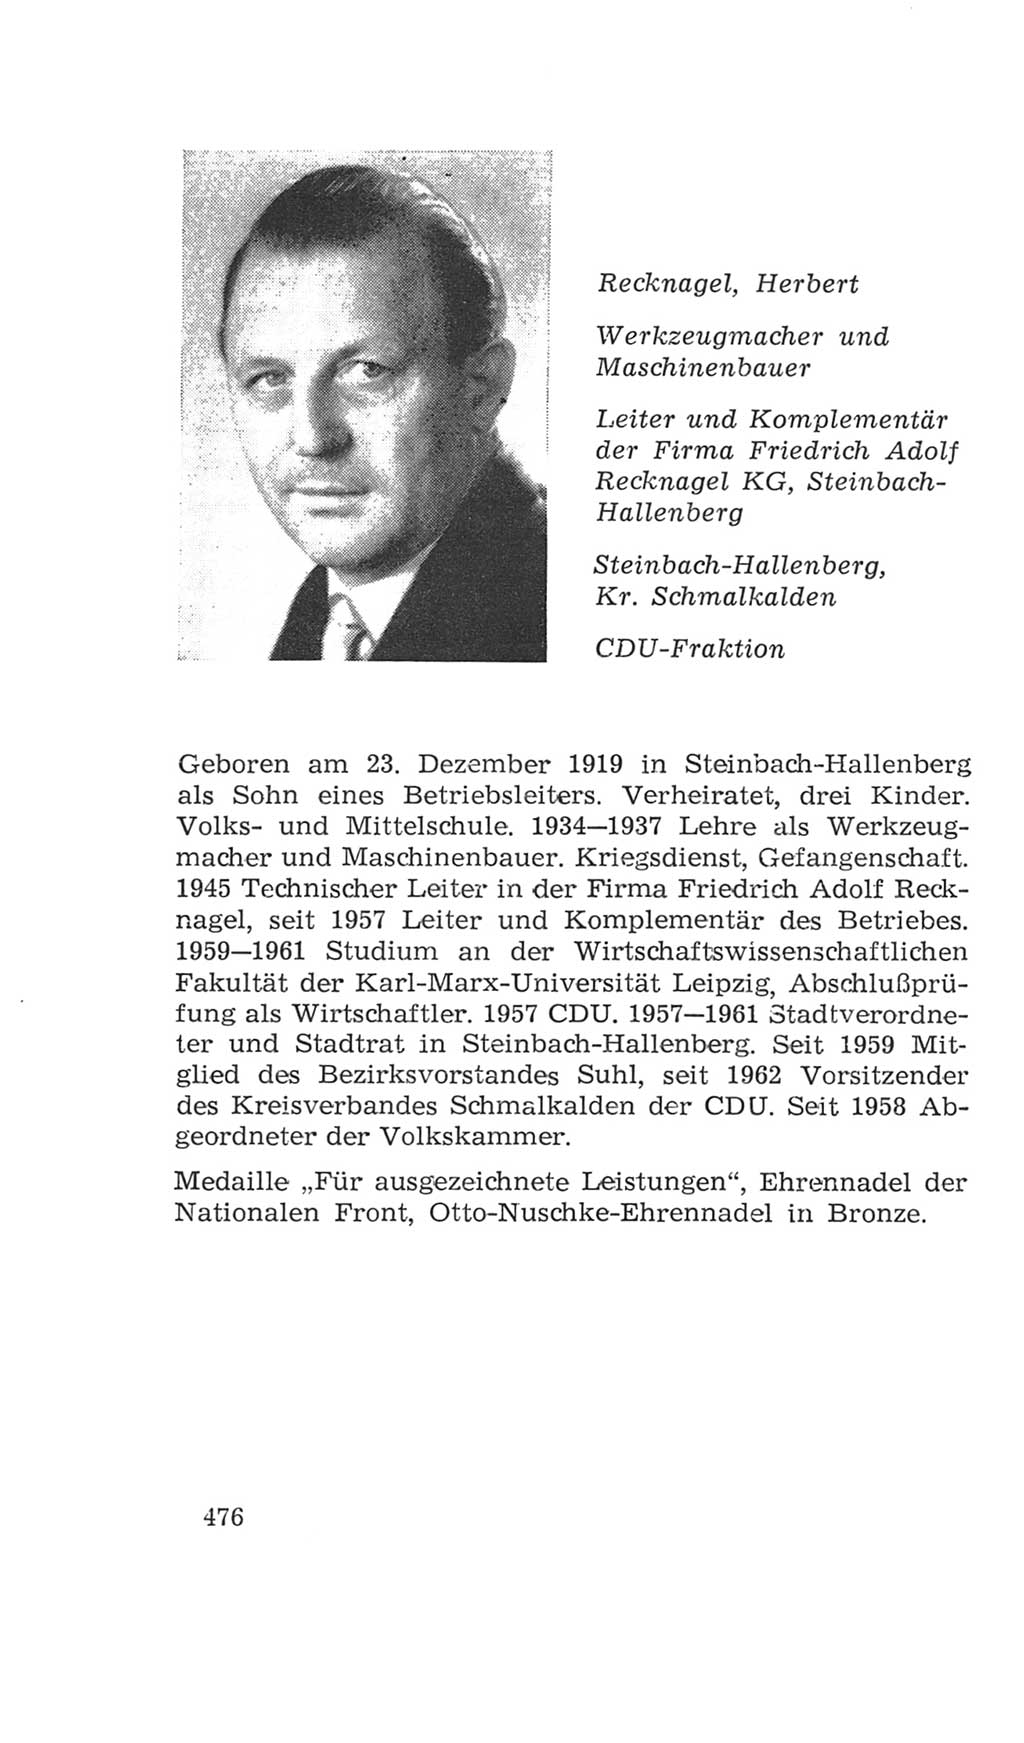 Volkskammer (VK) der Deutschen Demokratischen Republik (DDR), 4. Wahlperiode 1963-1967, Seite 476 (VK. DDR 4. WP. 1963-1967, S. 476)